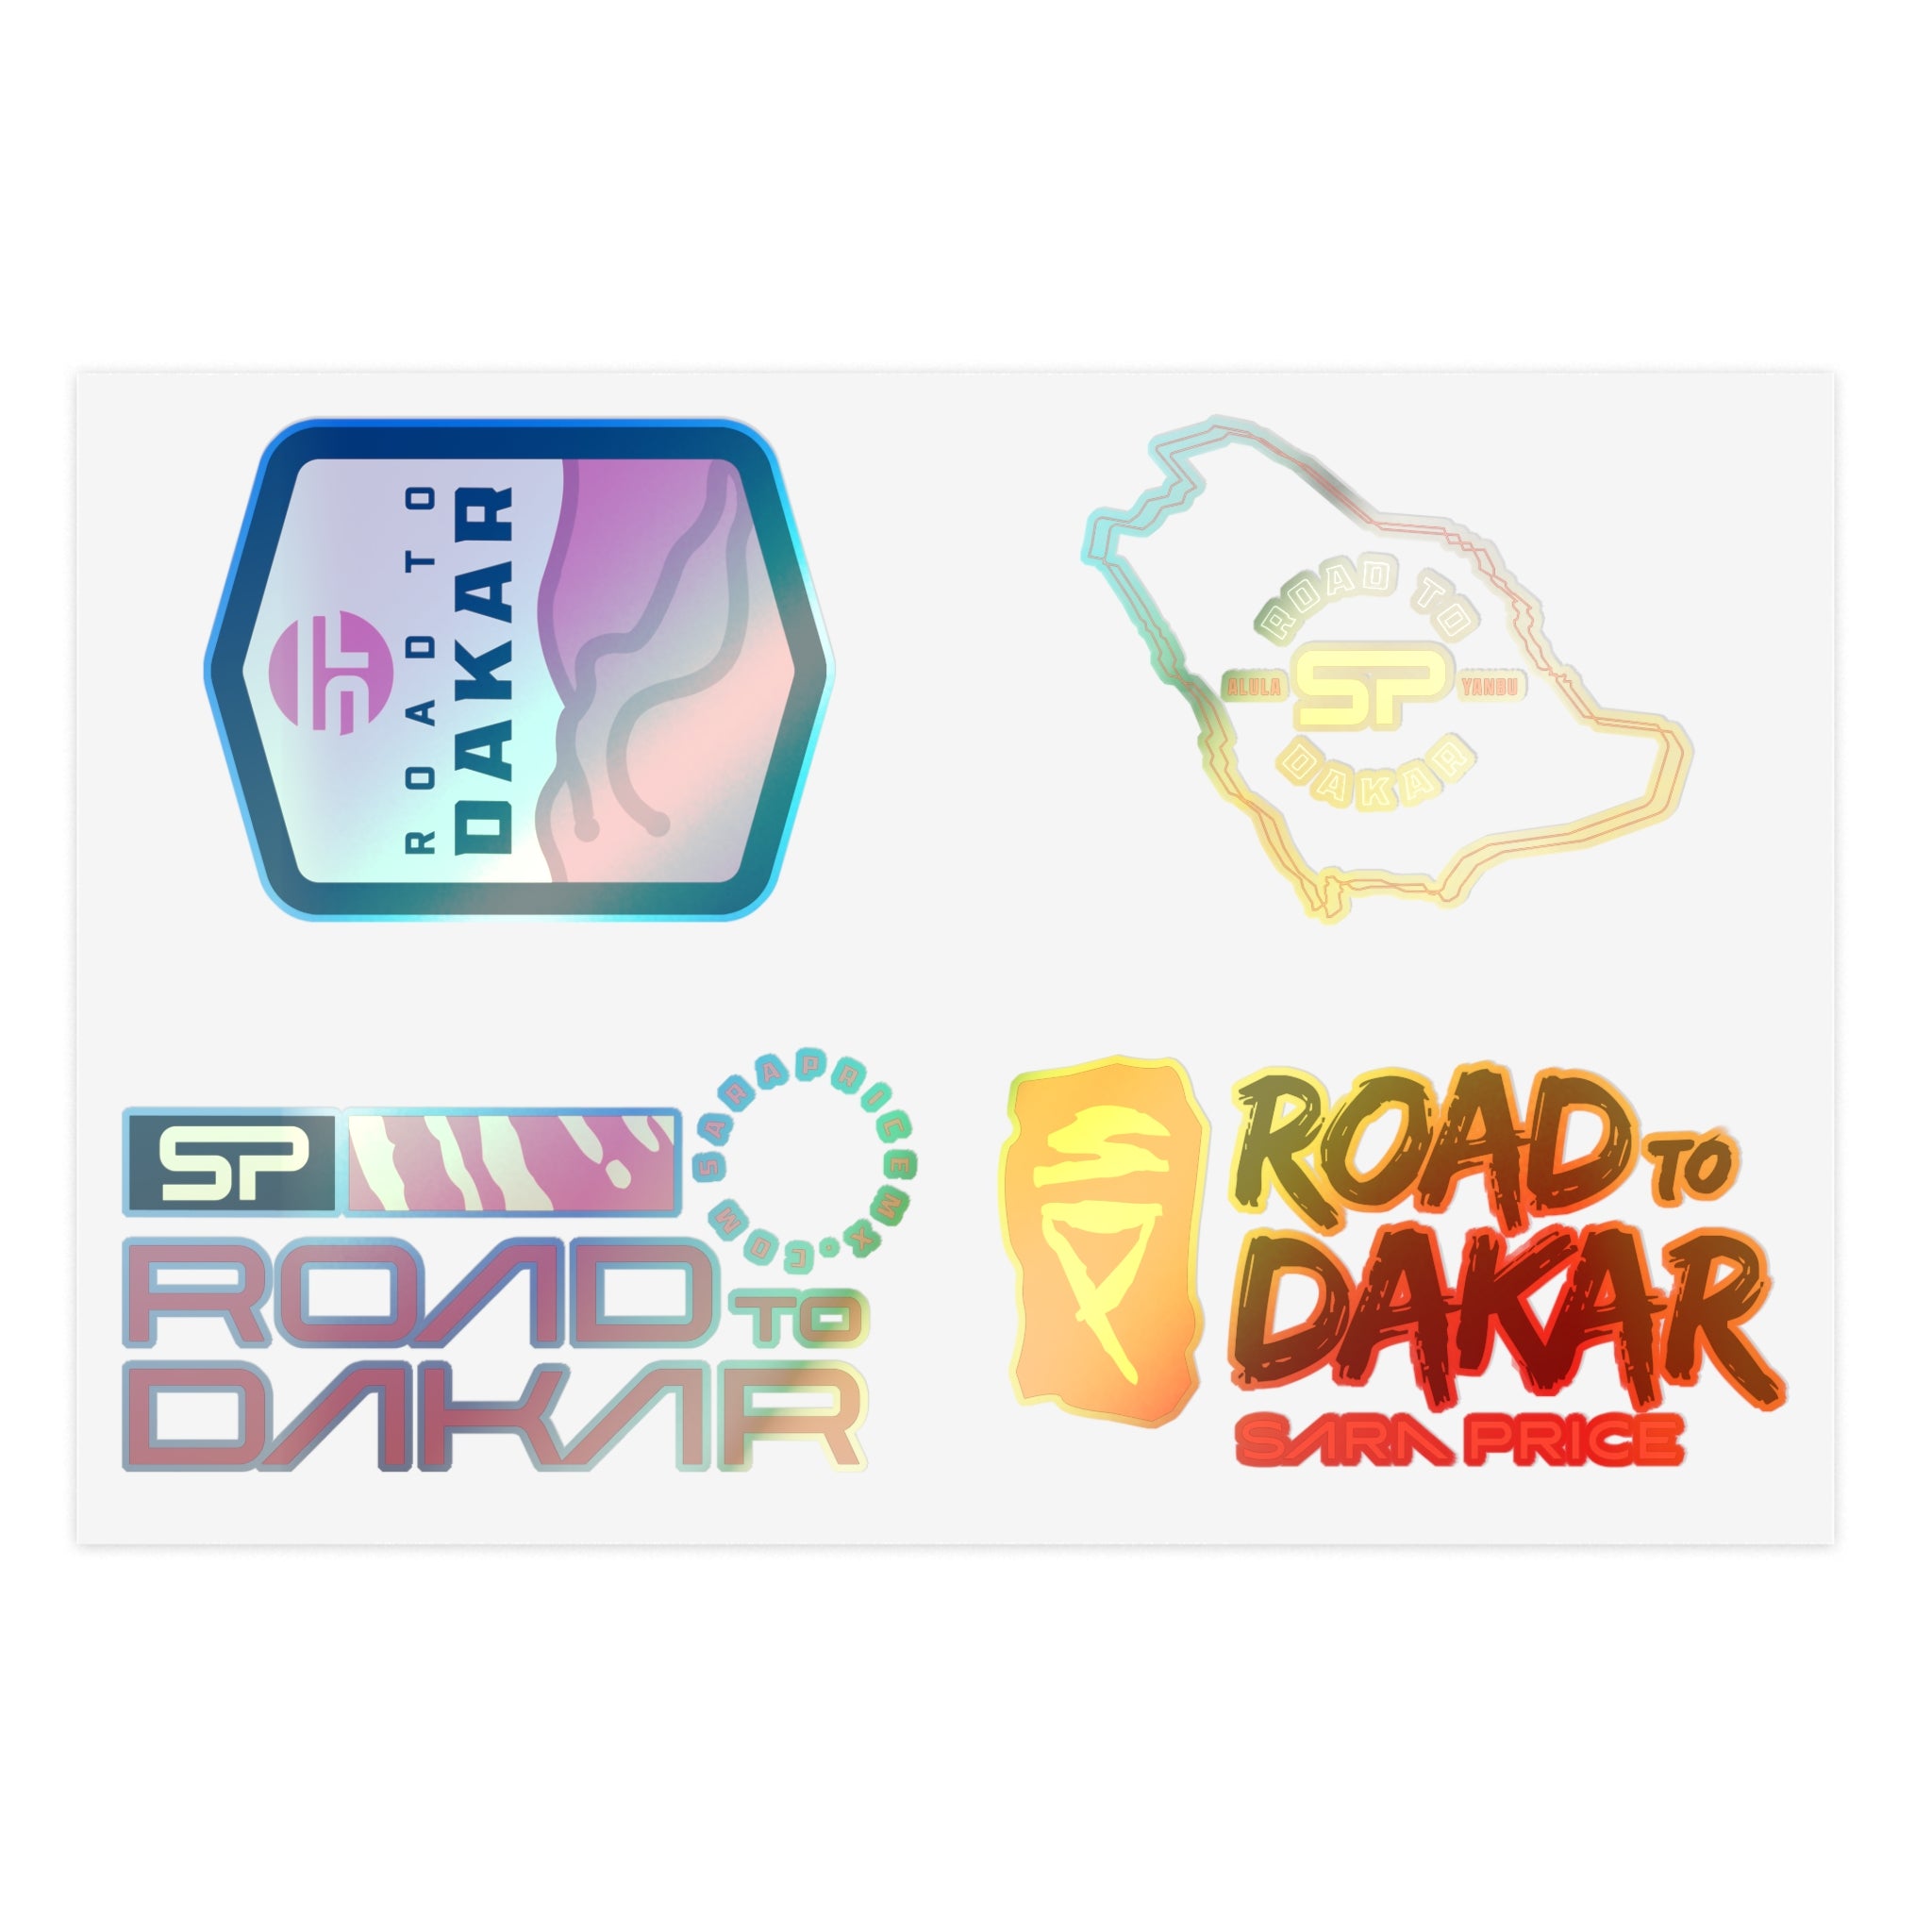 Road to Dakar Sticker Sheet